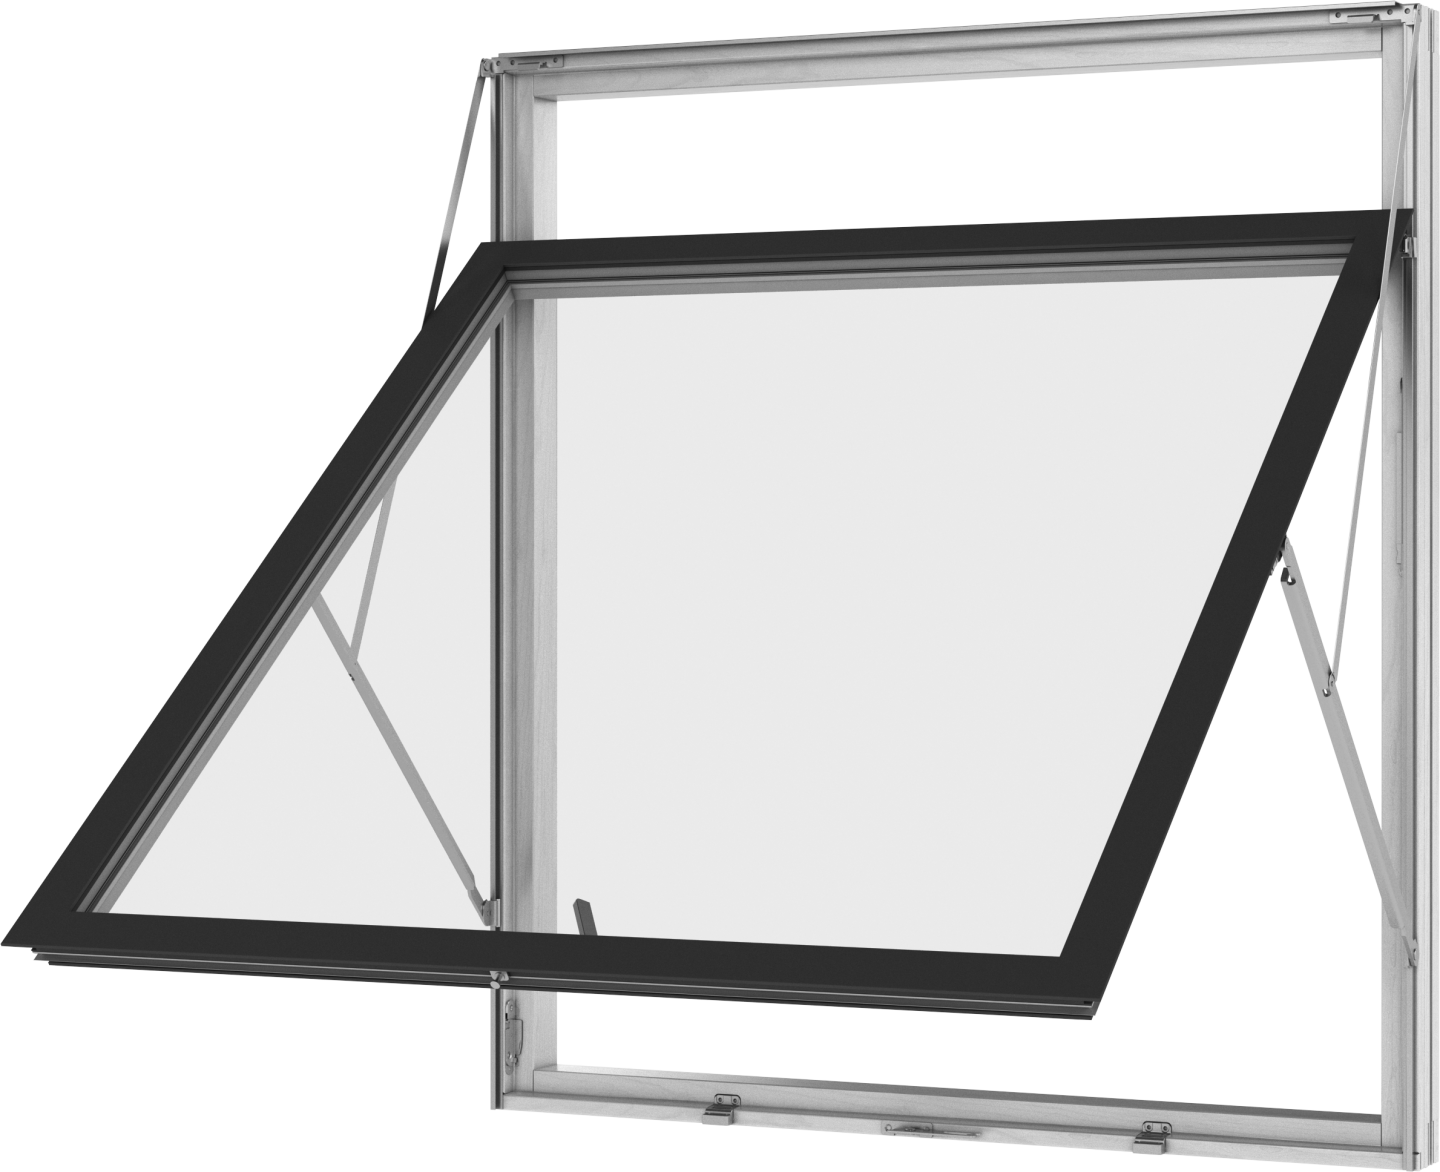 VELFAC Window Practicality